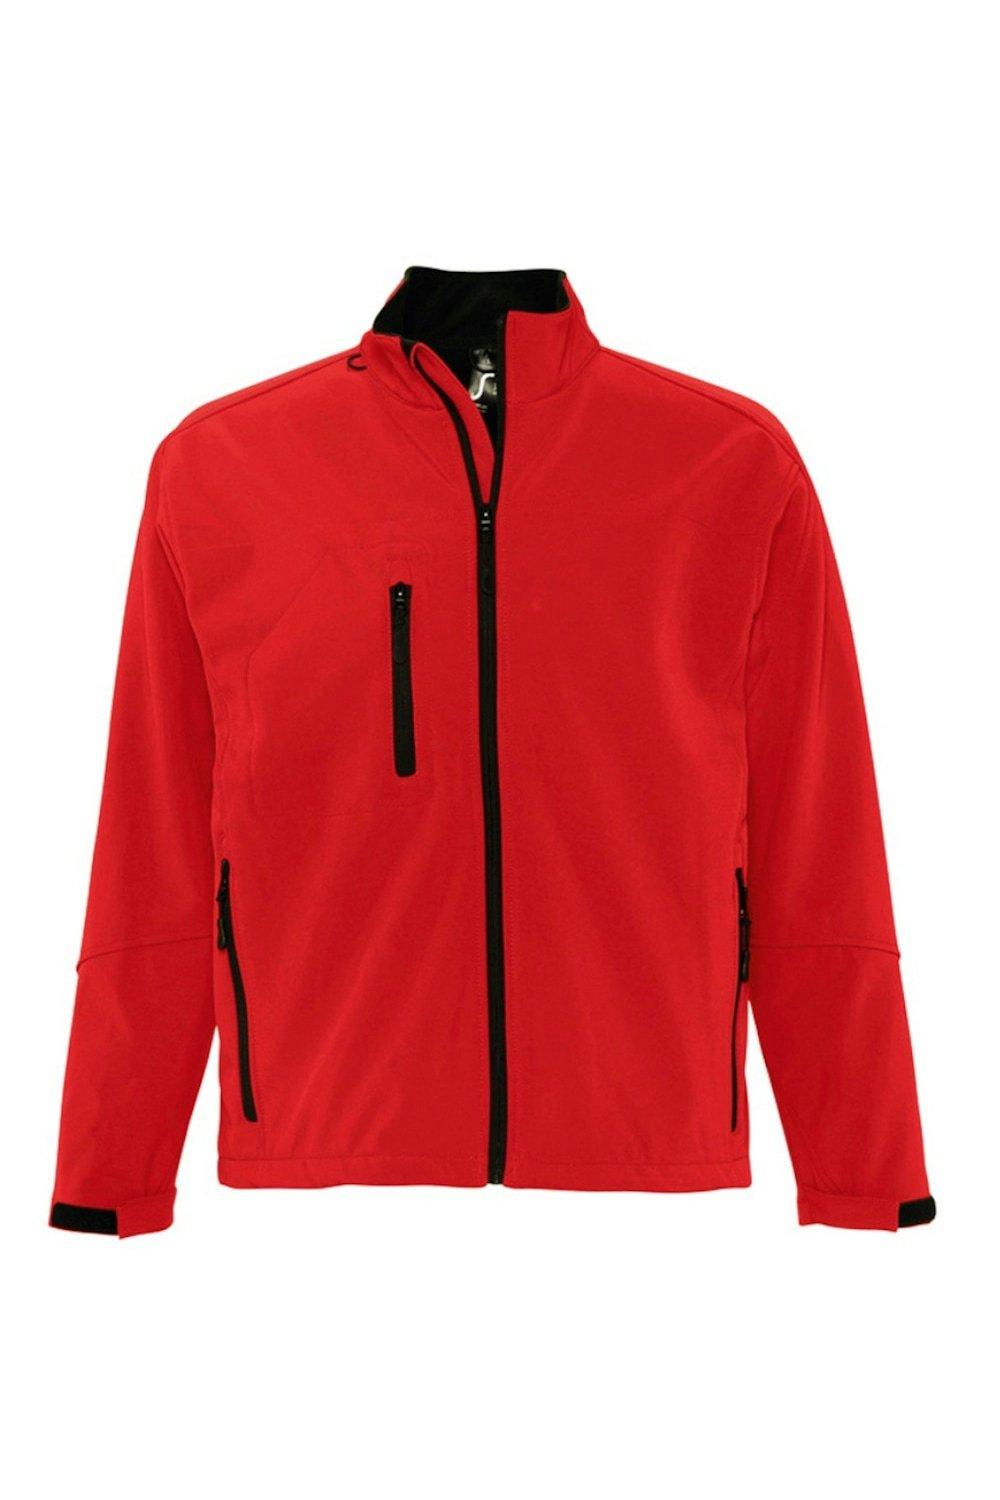 Куртка Relax Soft Shell (дышащая, ветрозащитная и водостойкая) SOL'S, красный